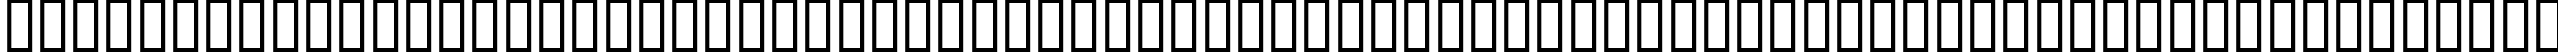 Пример написания английского алфавита шрифтом BD Plakatbau